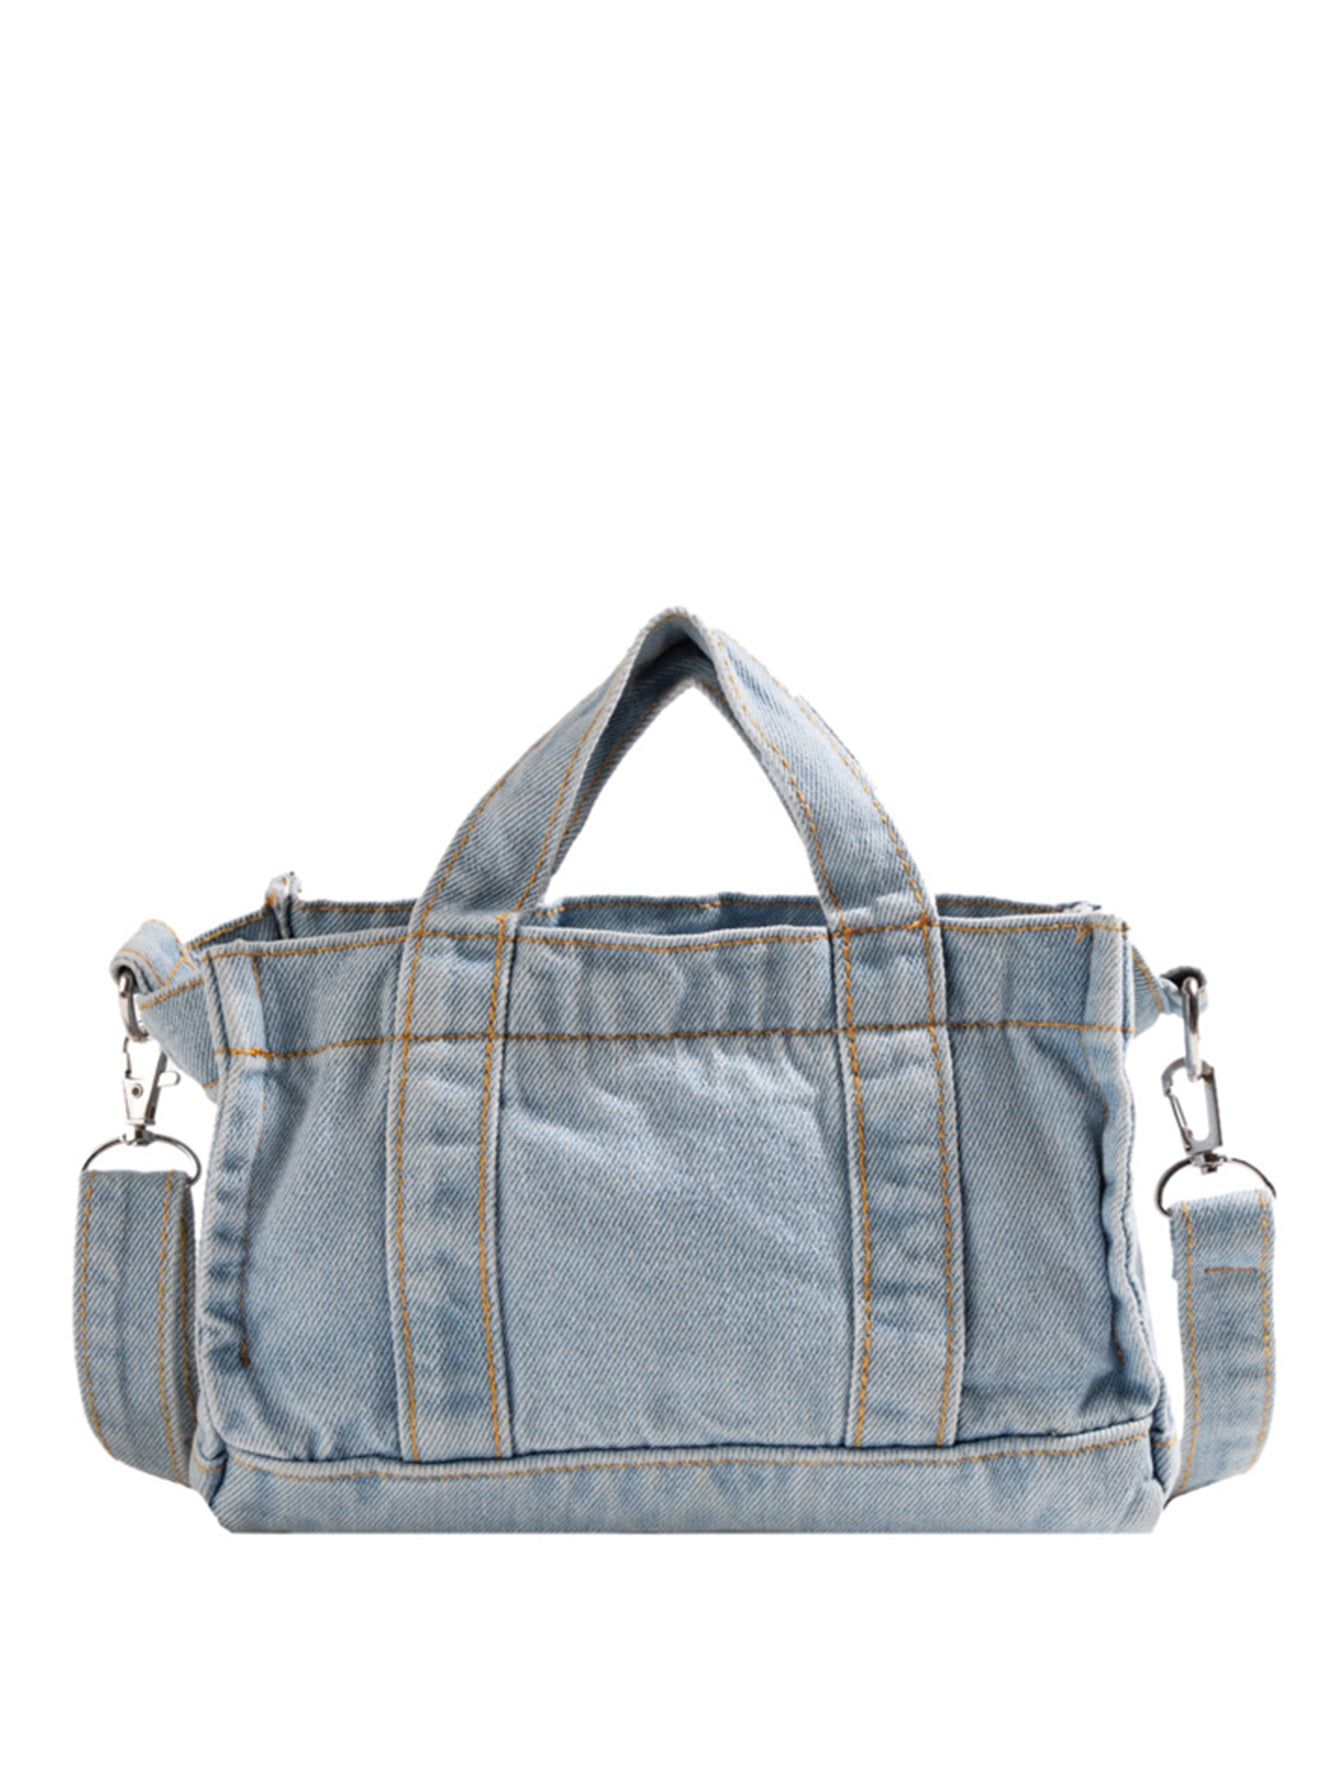 Uylee's Boutique Denim Shoulder Bag